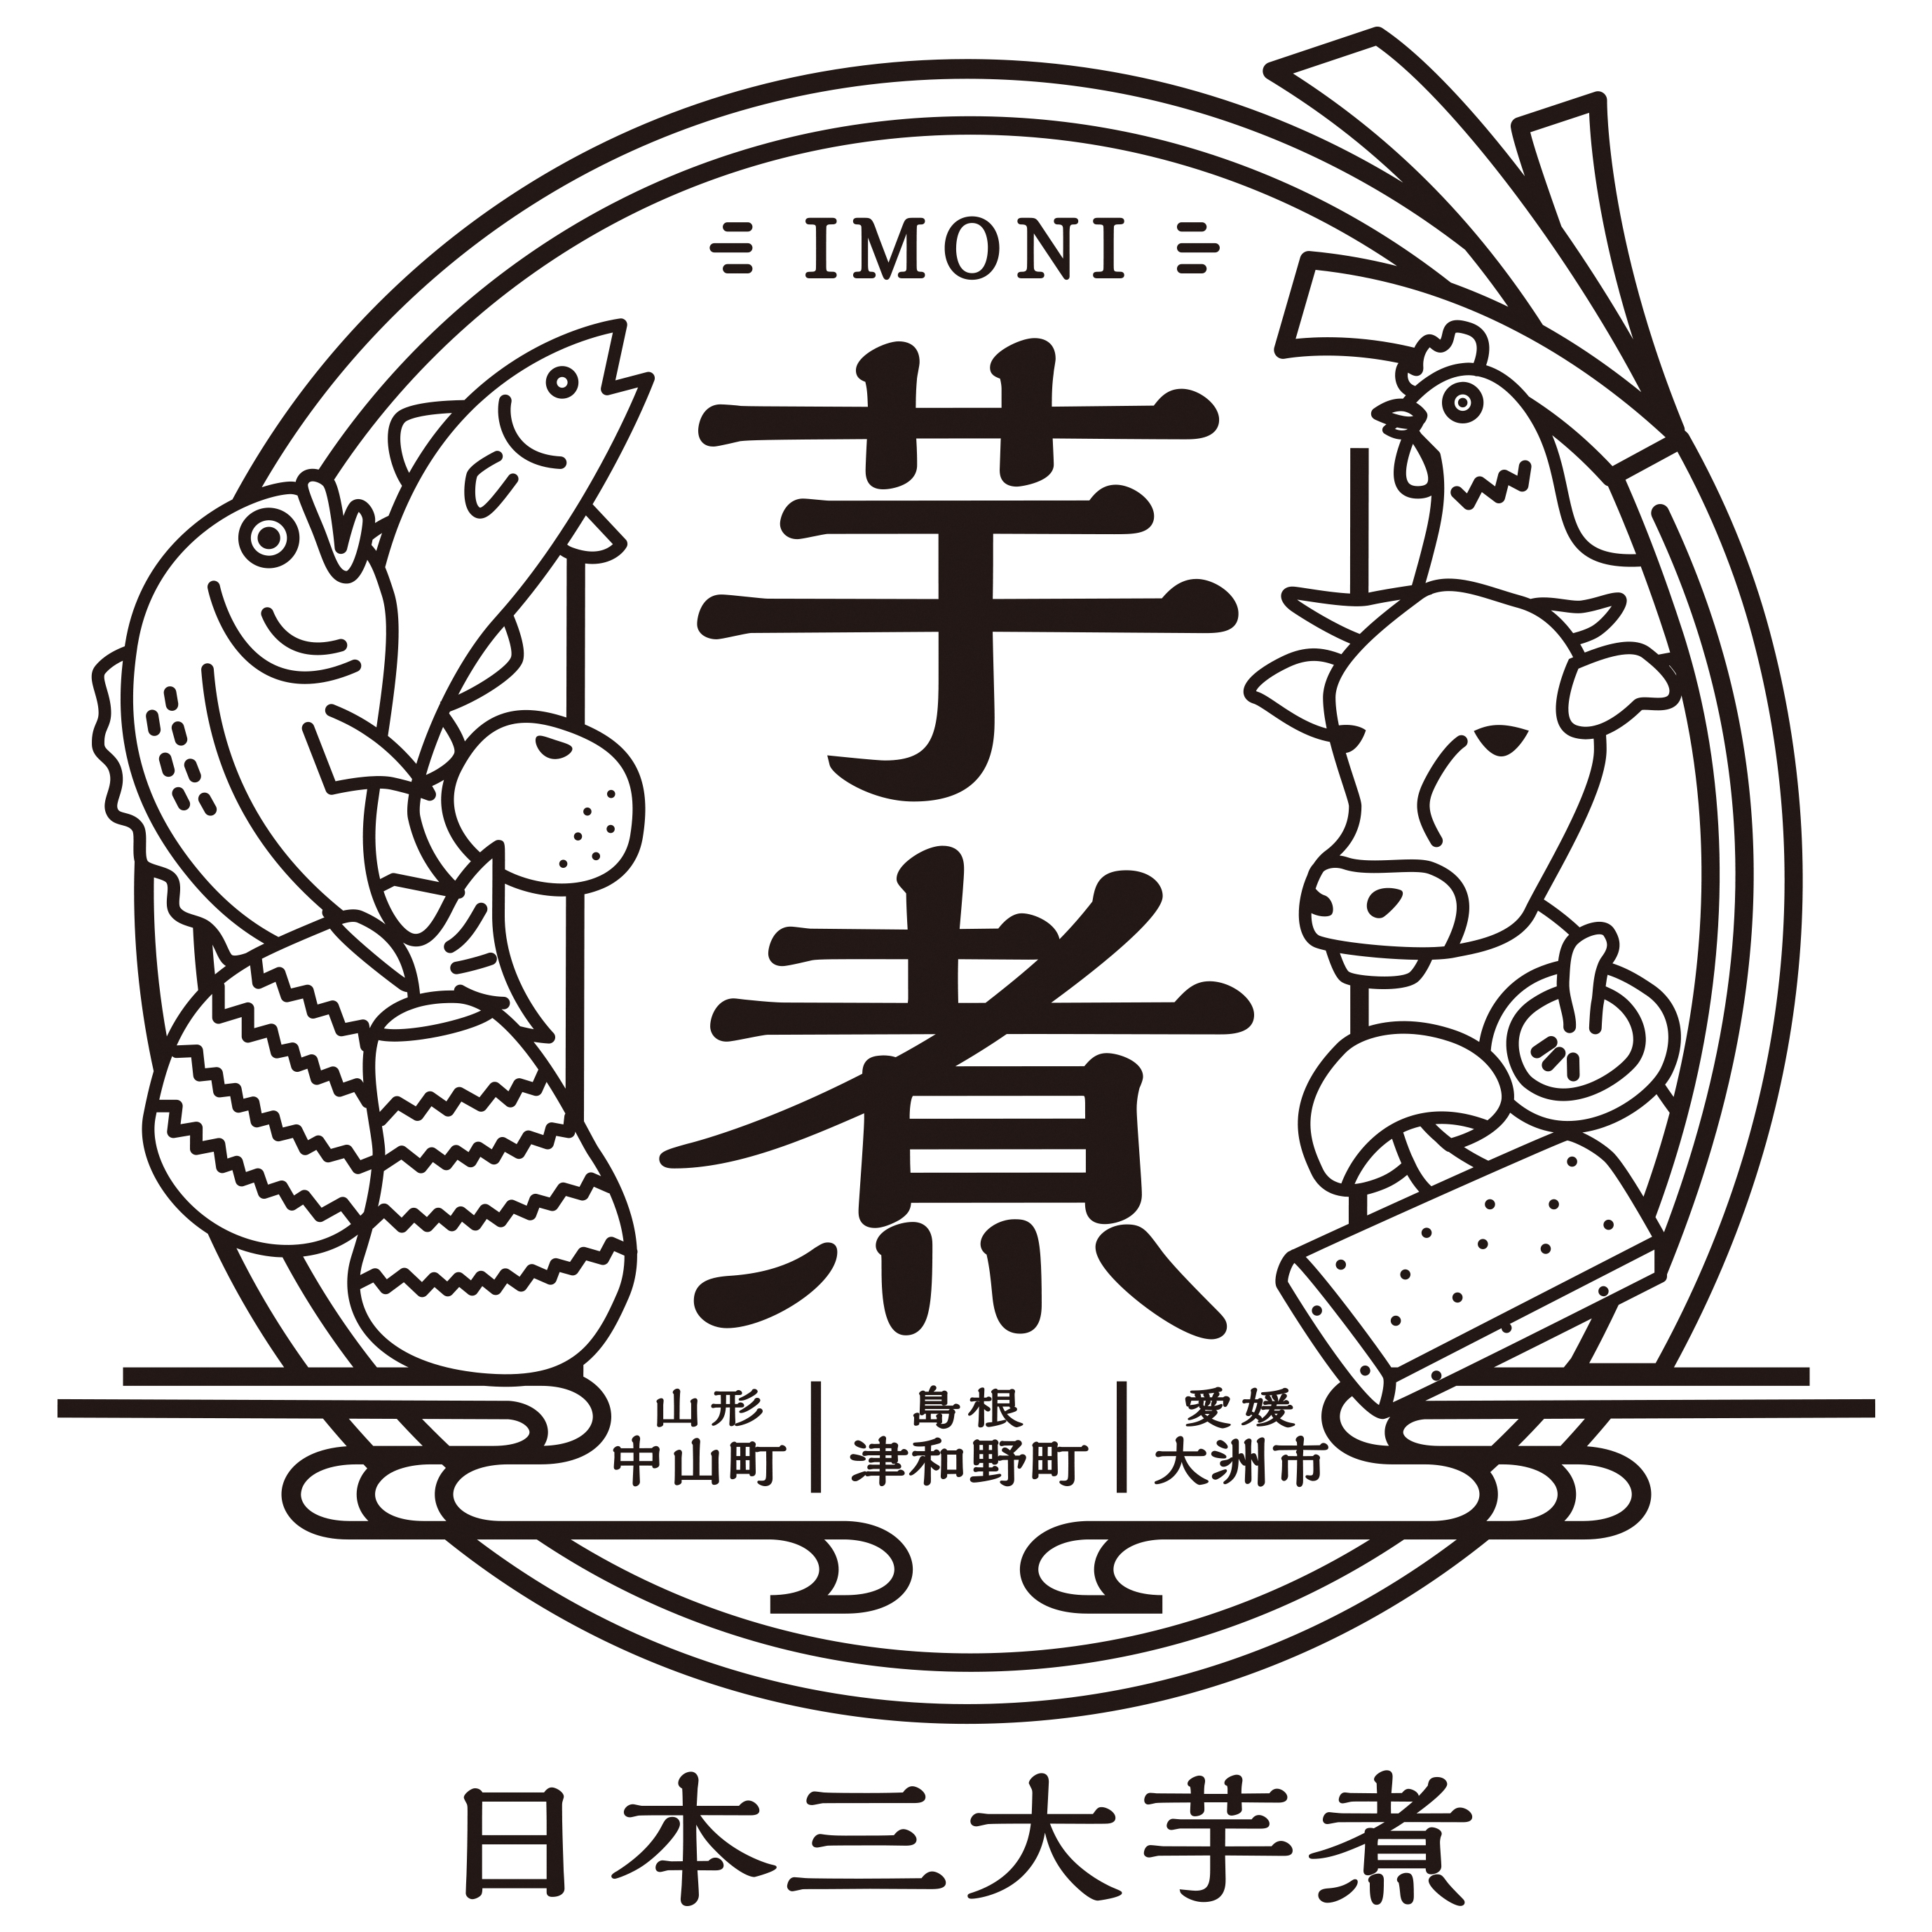 日本三大芋煮のロゴ